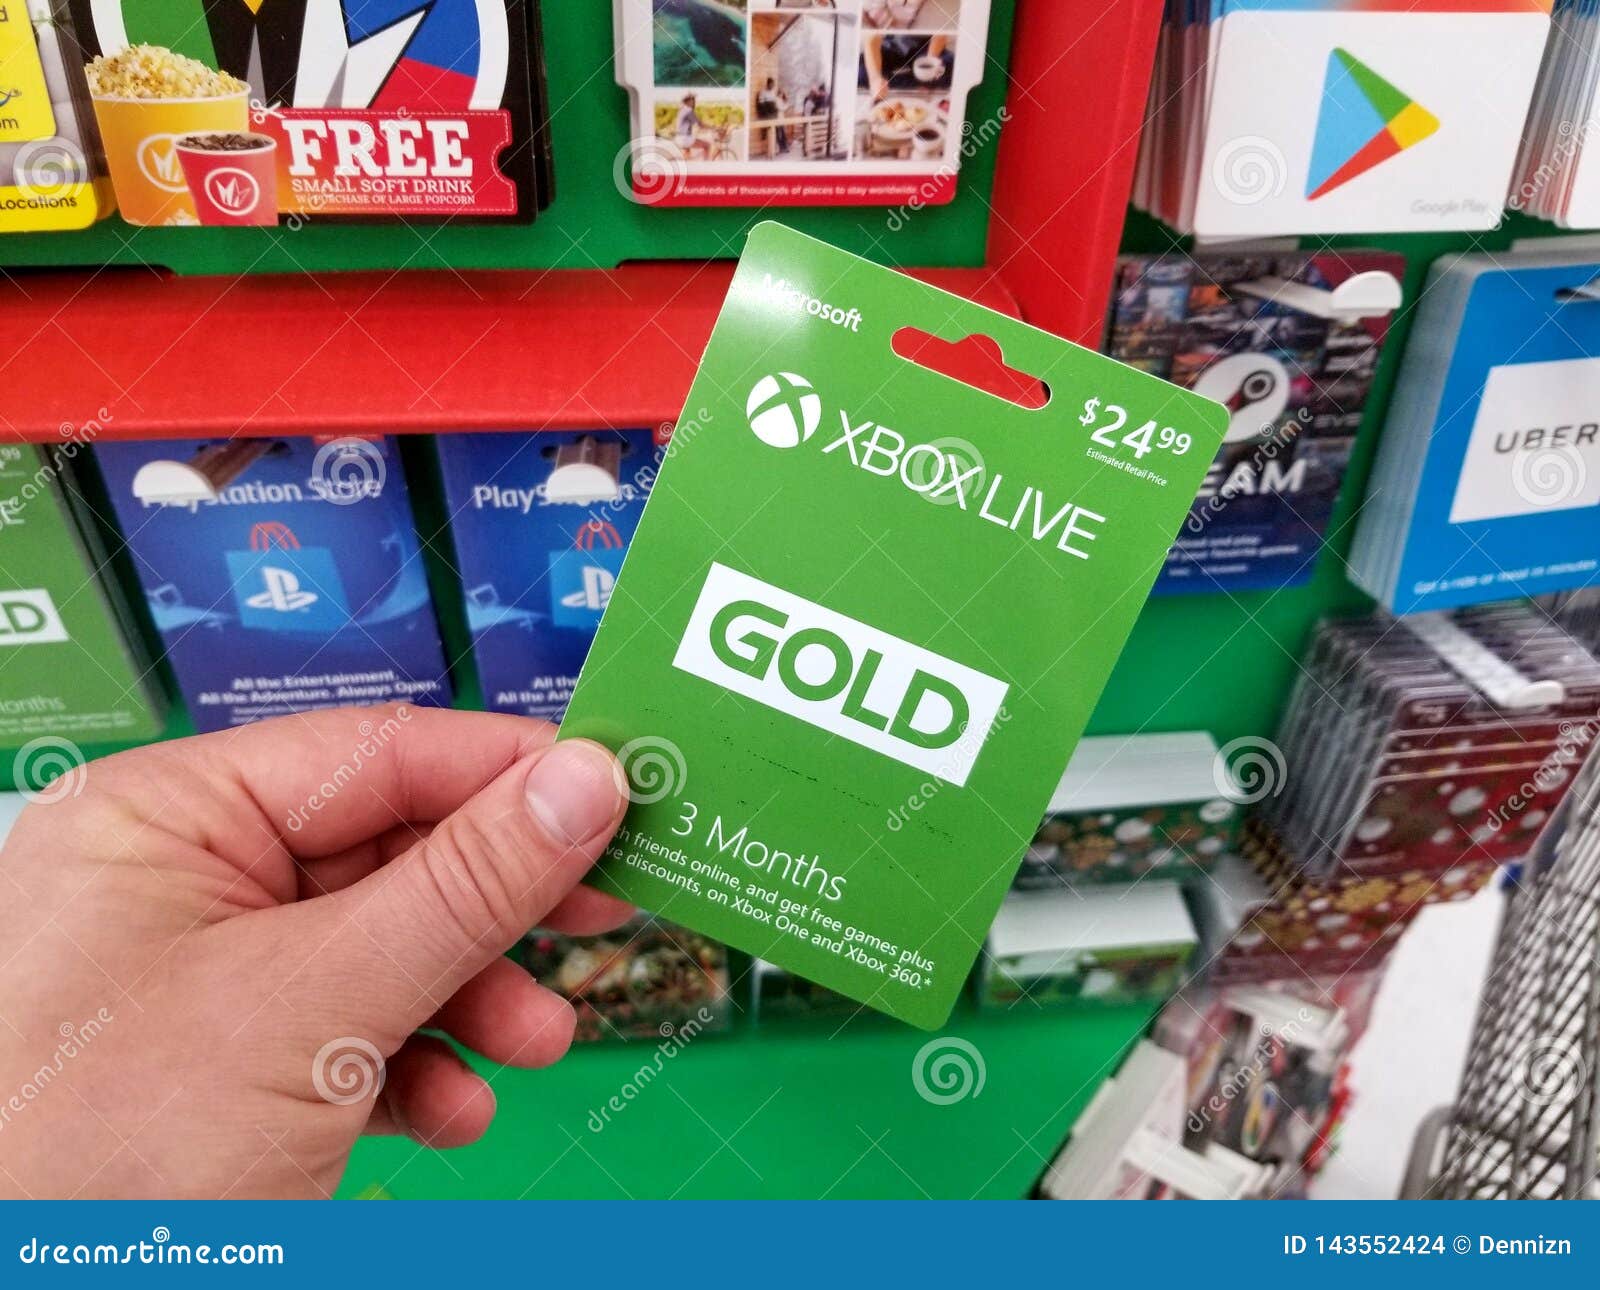  MICROSOFT Carta regalo Xbox Live ricarica 50 €